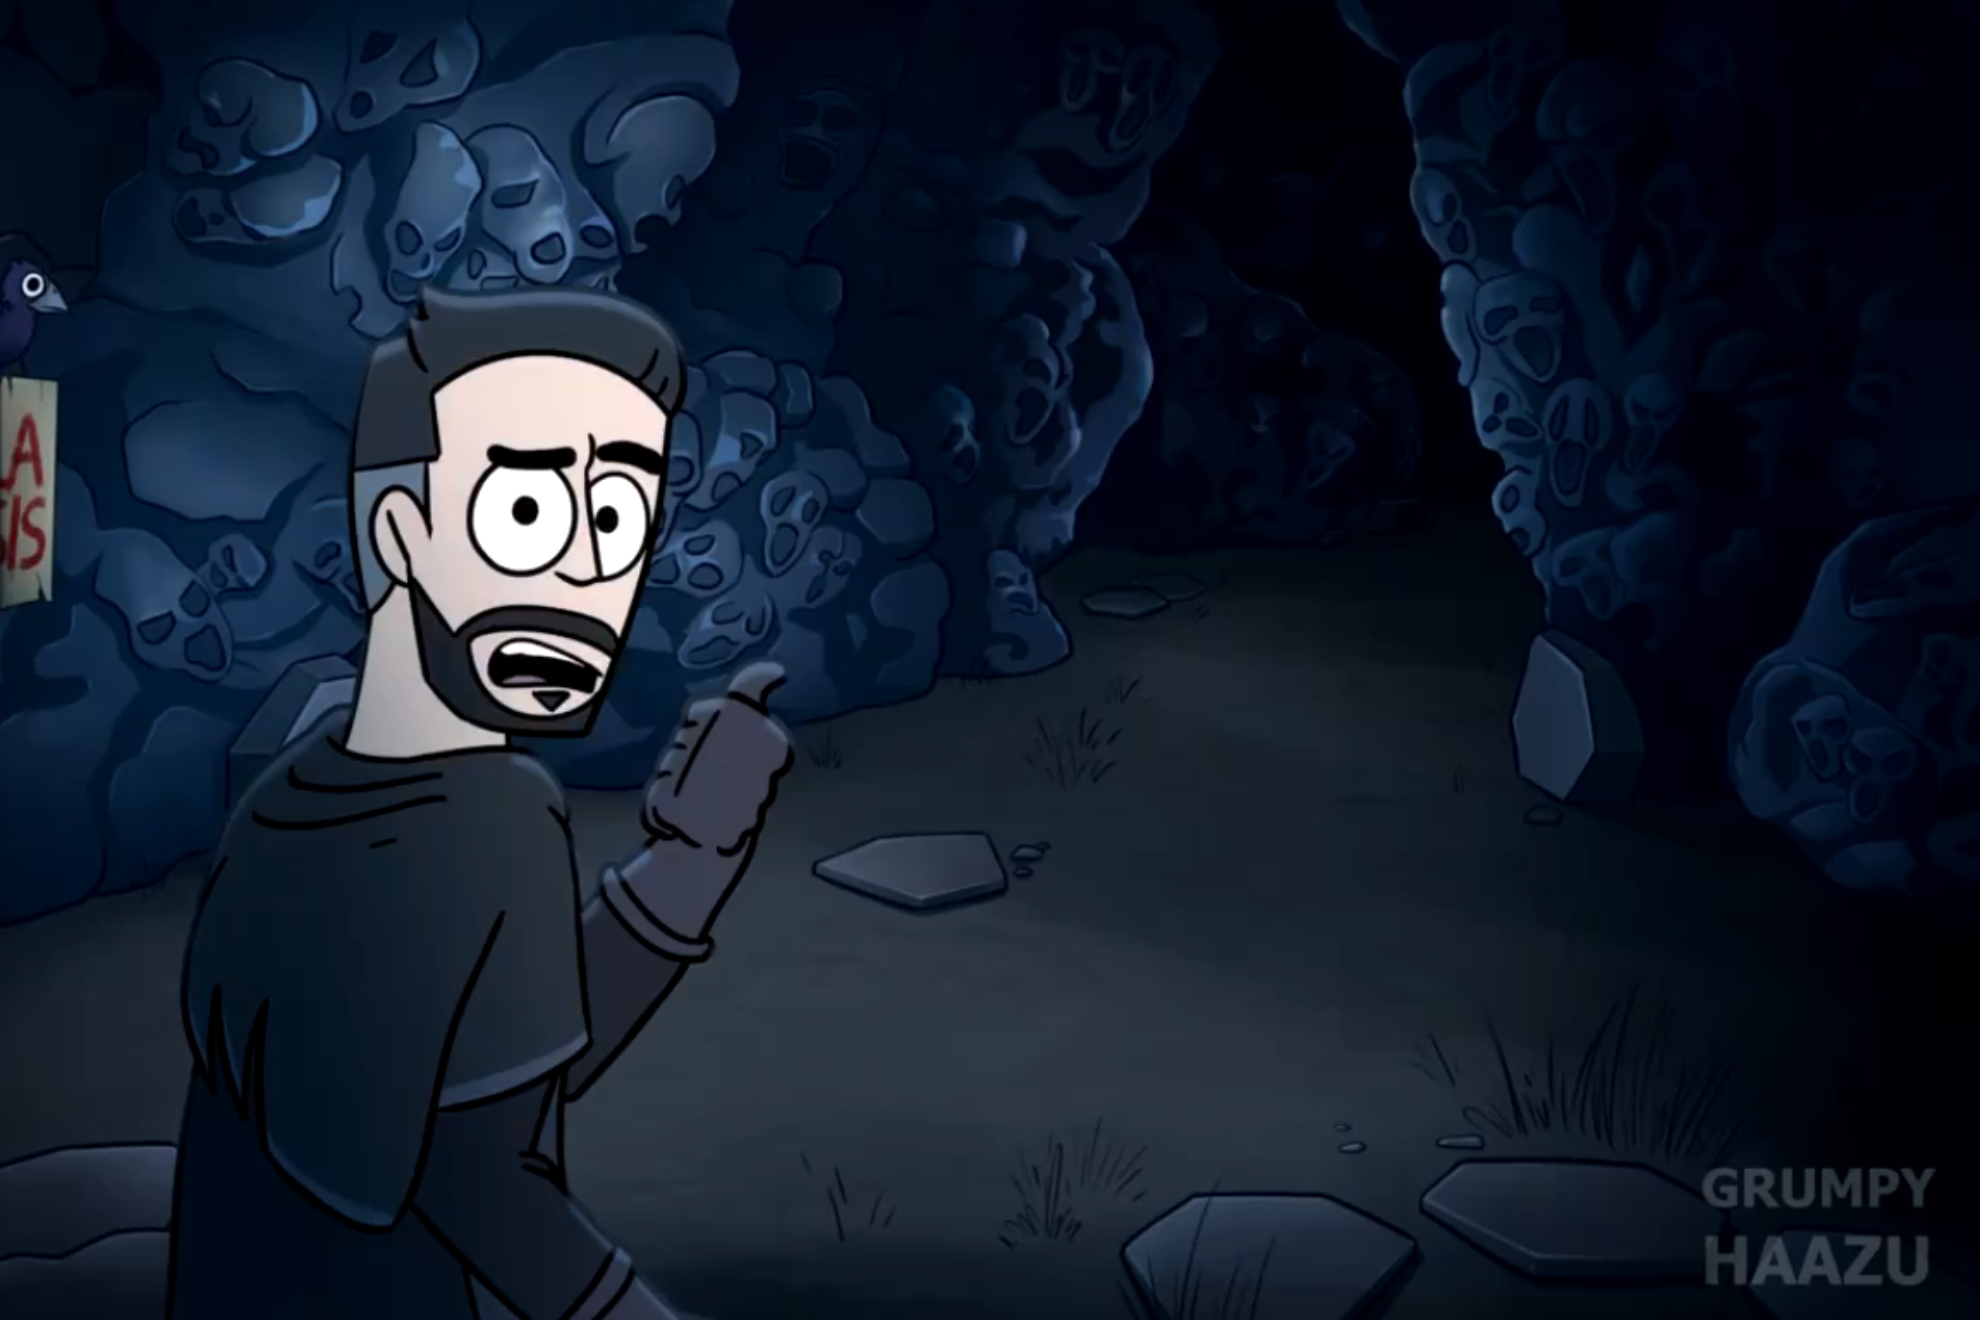 'Illojuan animado': así es la animación de GrumpyHaazu con clips graciosos del streamer | X @GrumpyHaazu